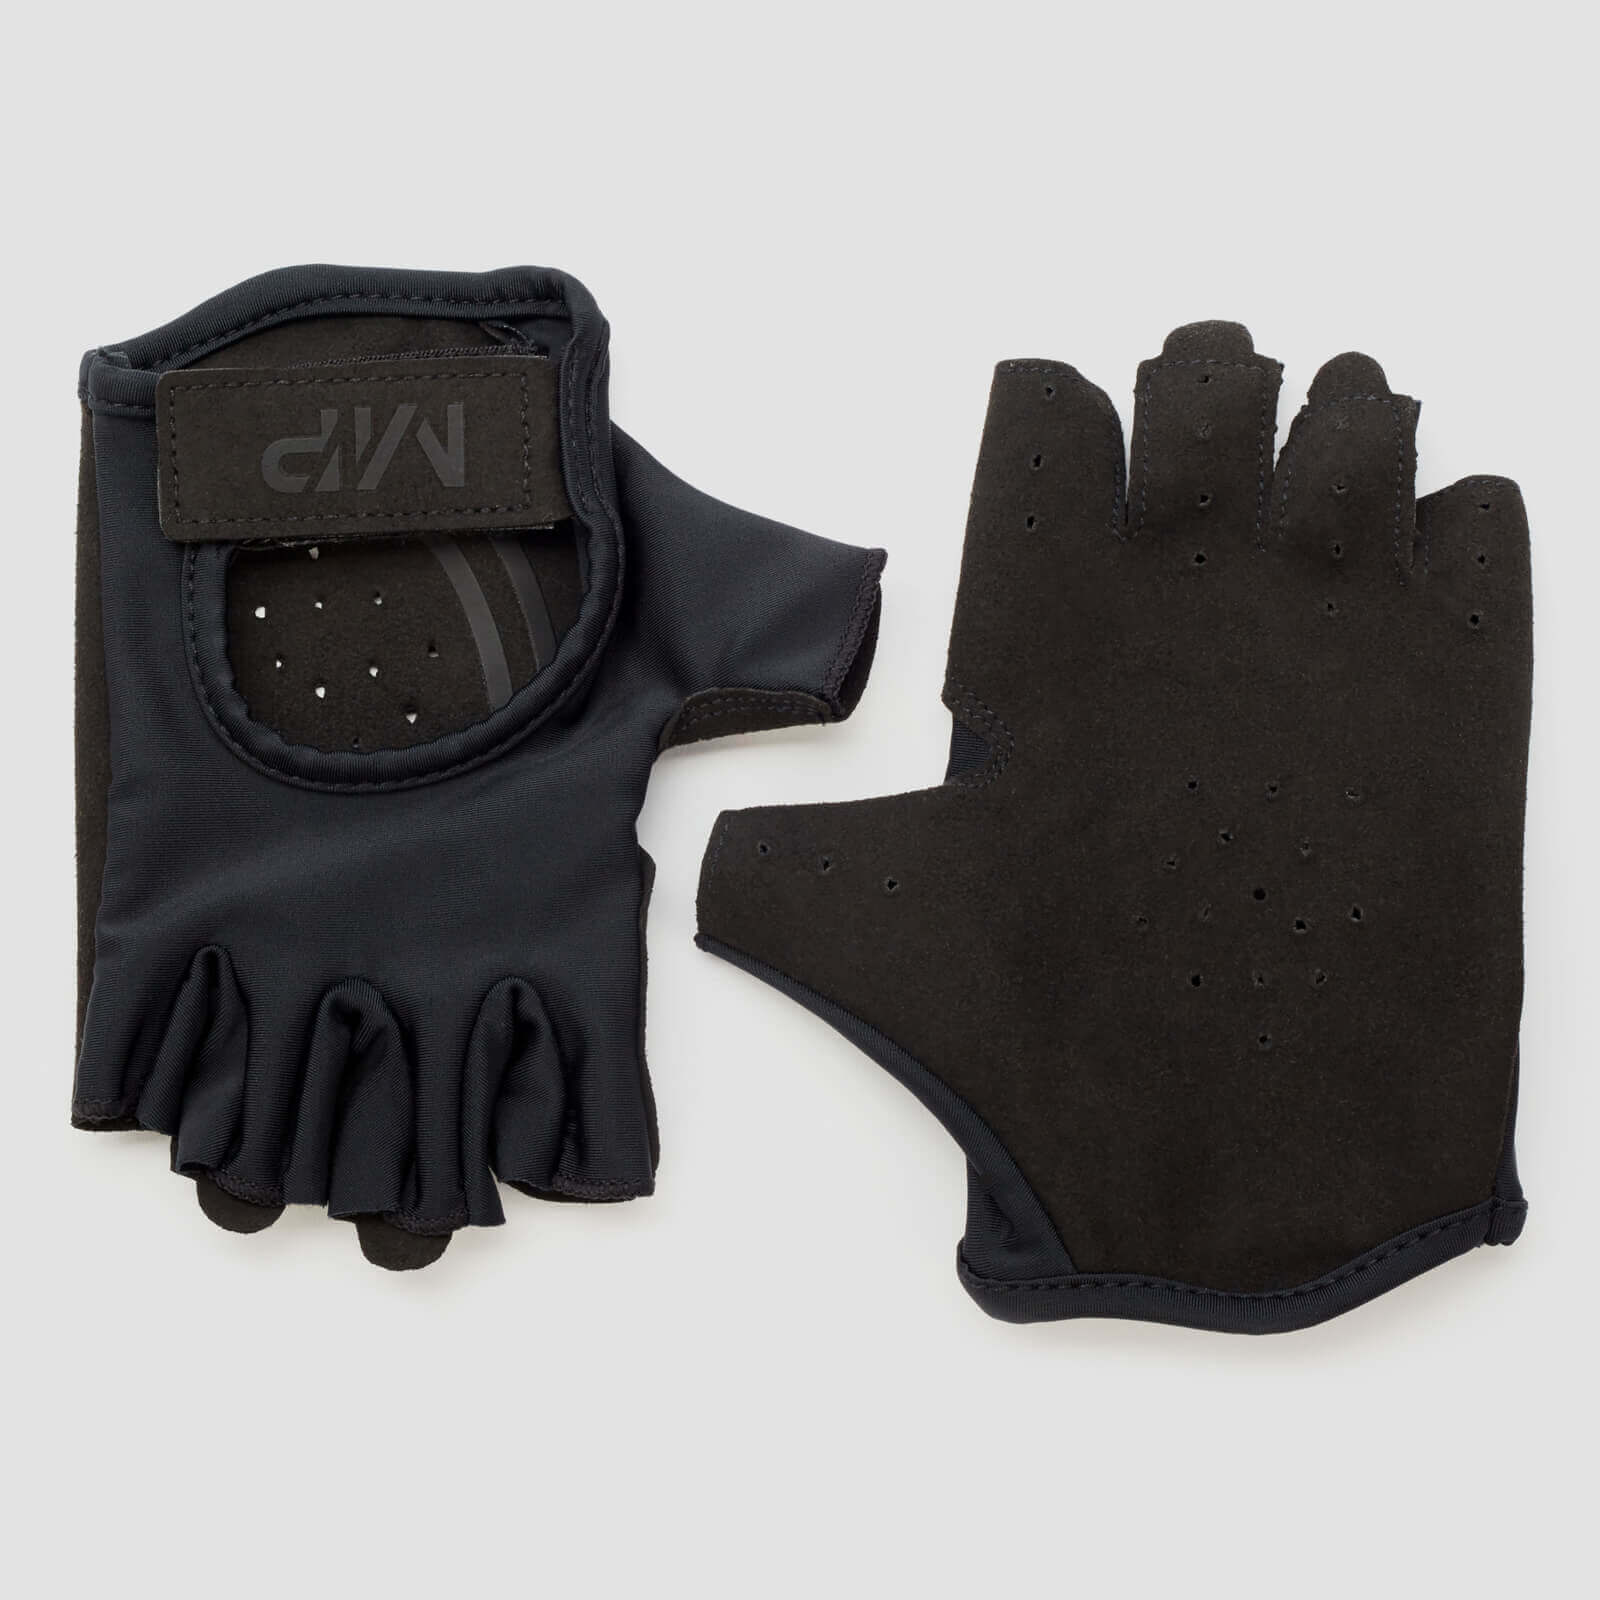 MP Men's Lifting Gloves -käsineet - Musta - M - Musta